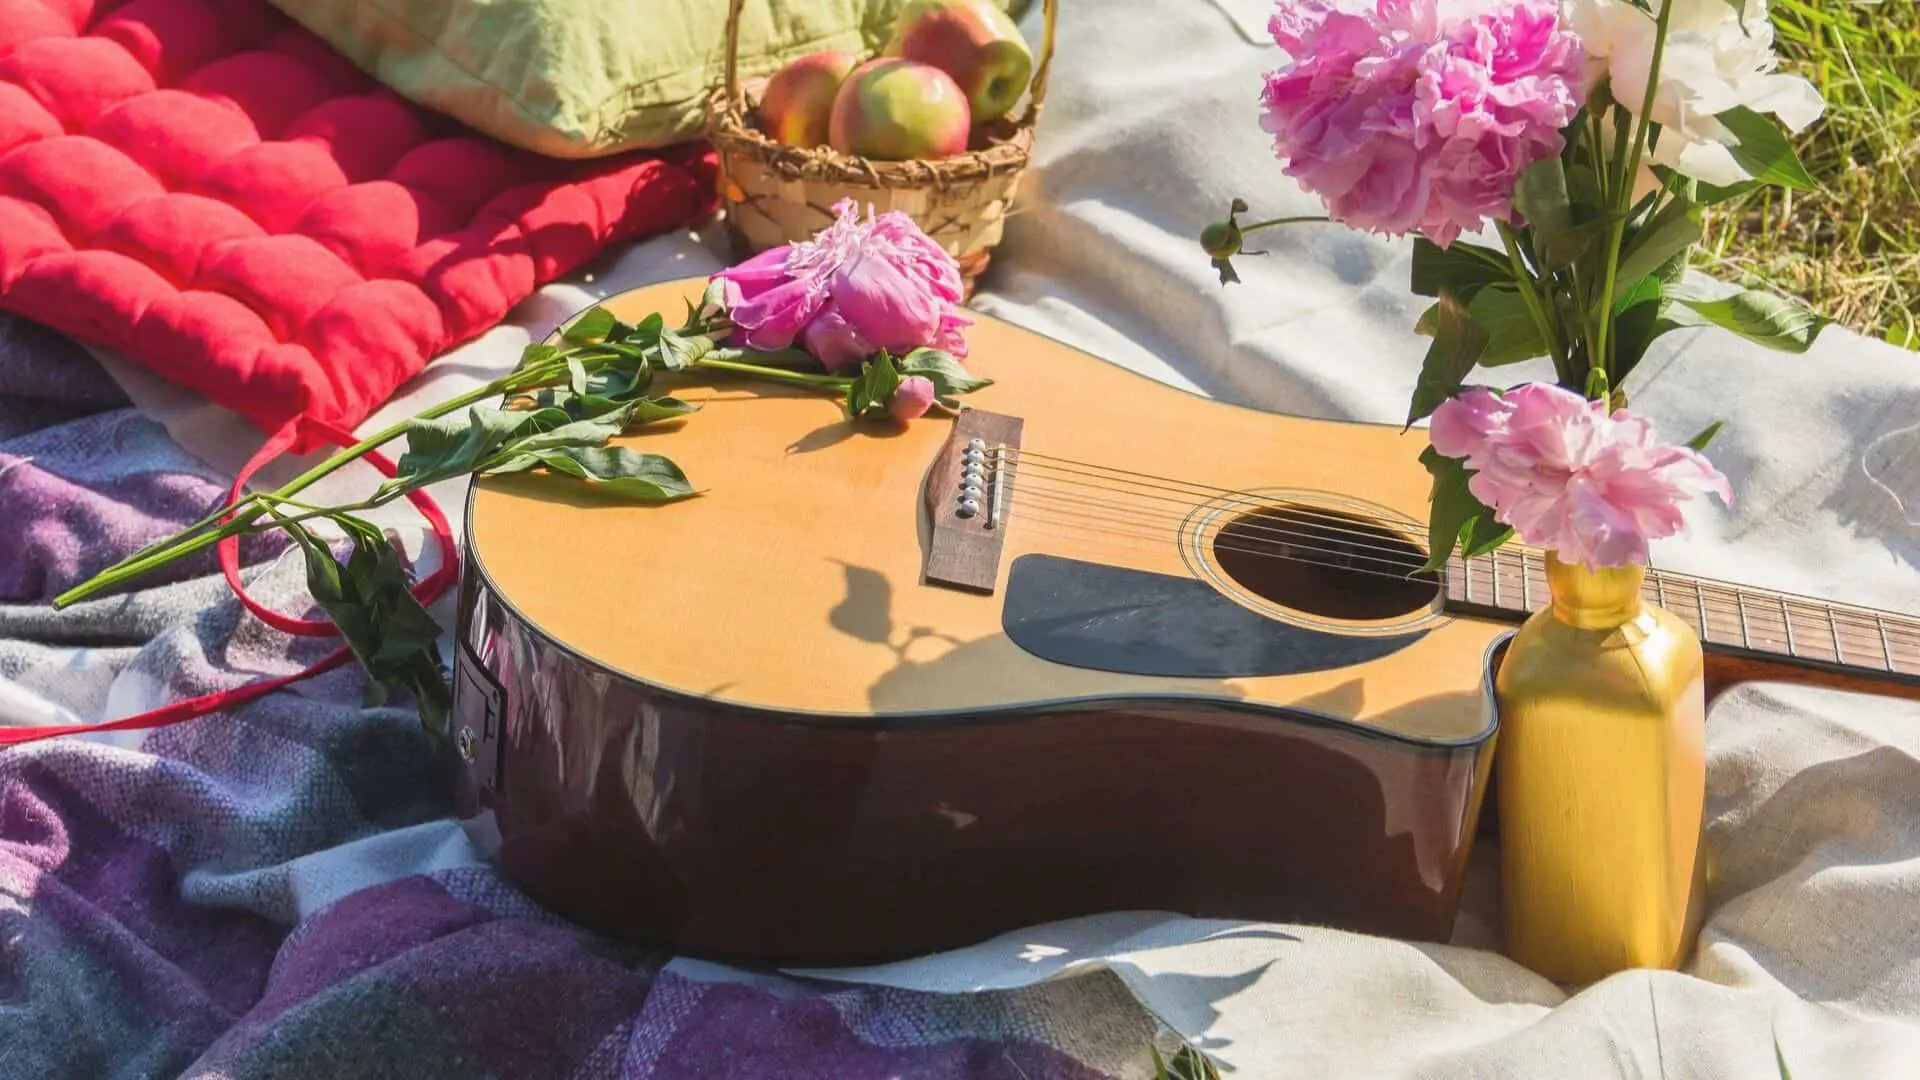 Lekker buiten met een gitaartje erbij voor wat muziek op je bruiloft